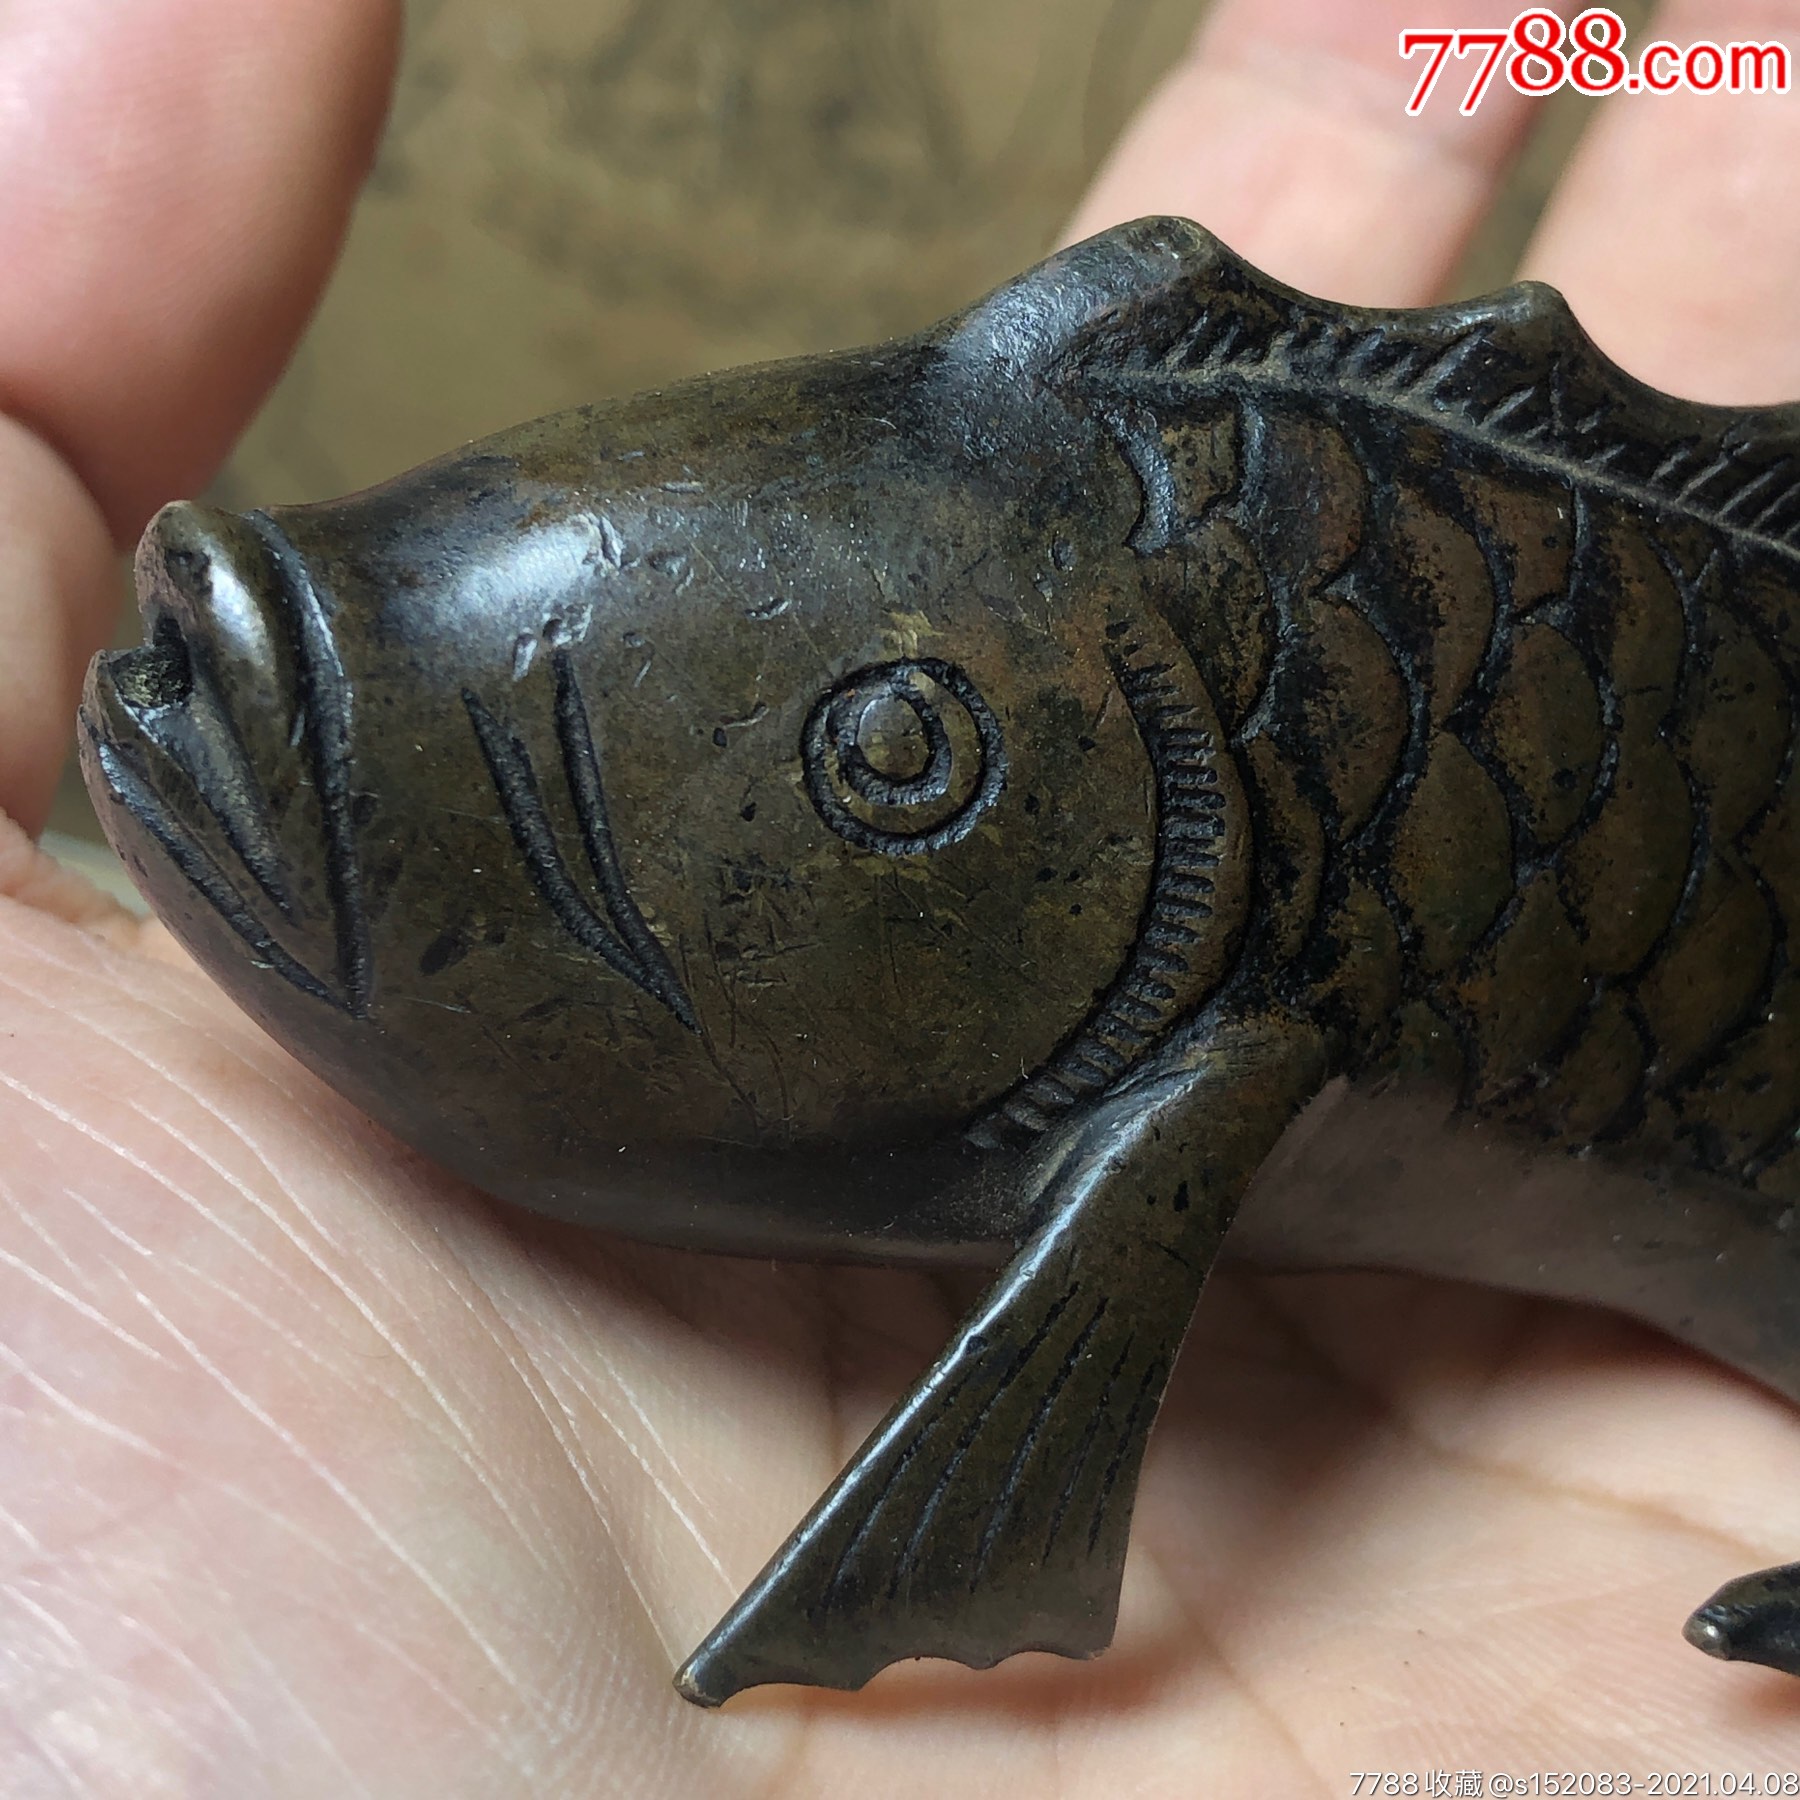 清代铜鱼水滴,品相完美,包浆厚重,题材少见,值得收藏